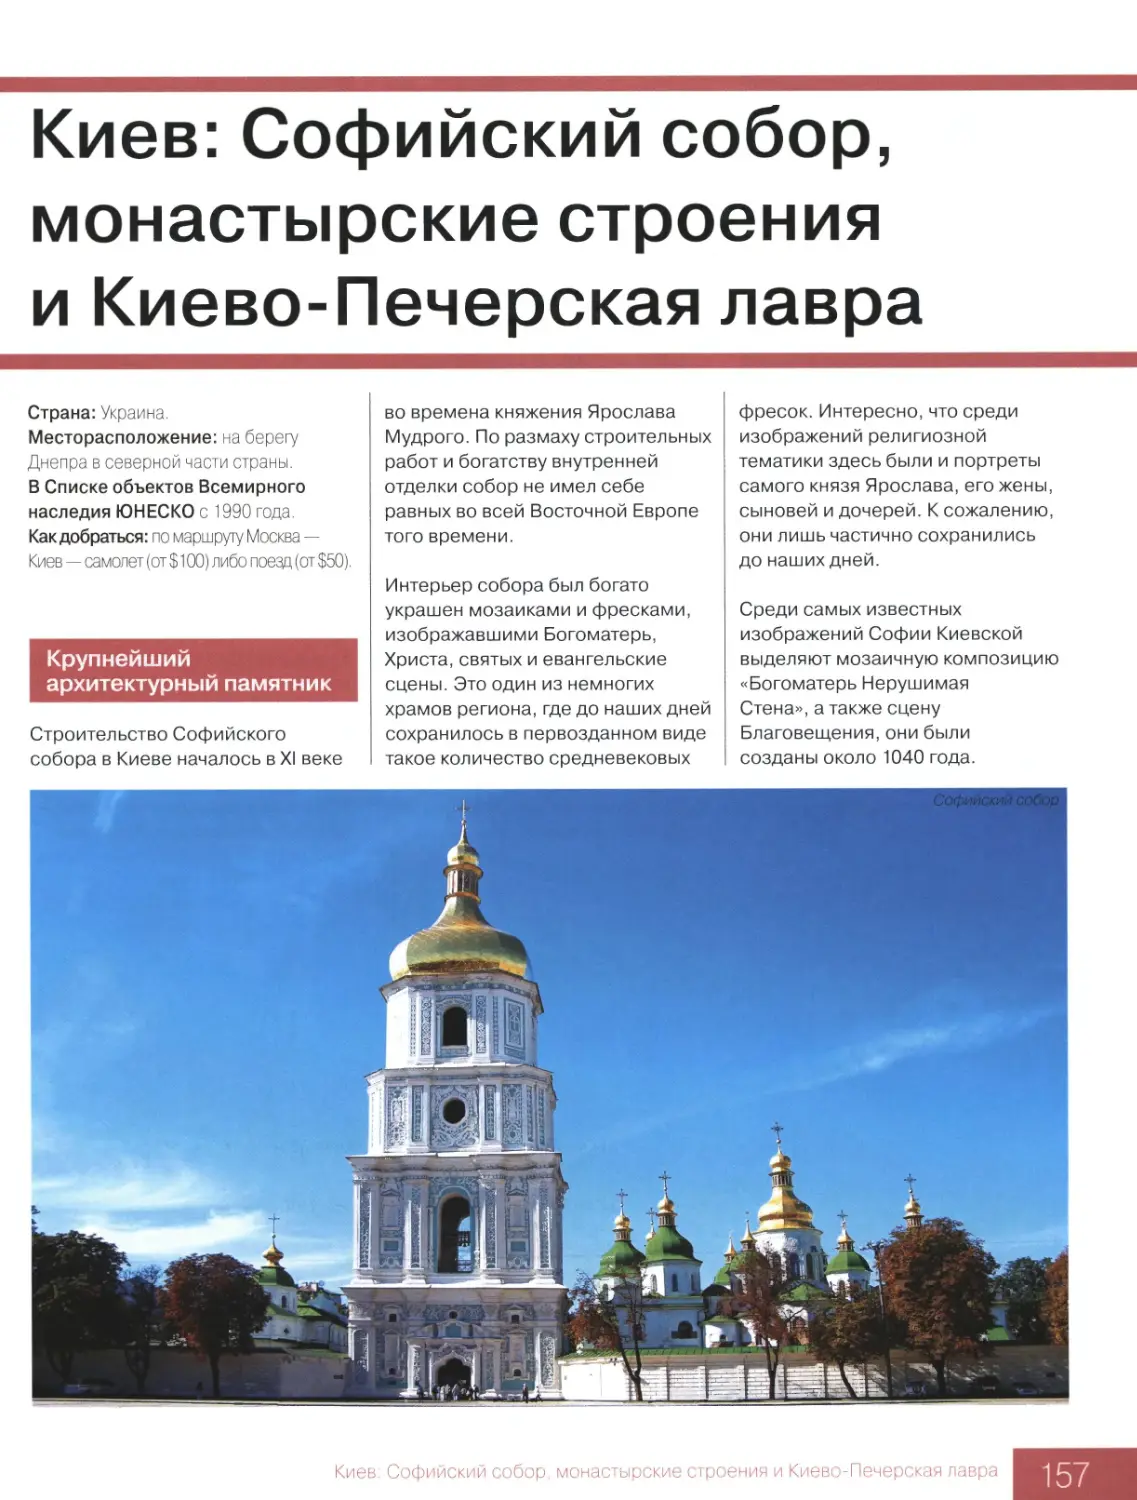 Киев: Софийский собор, монастырские строения и Киево-Печерская лавра